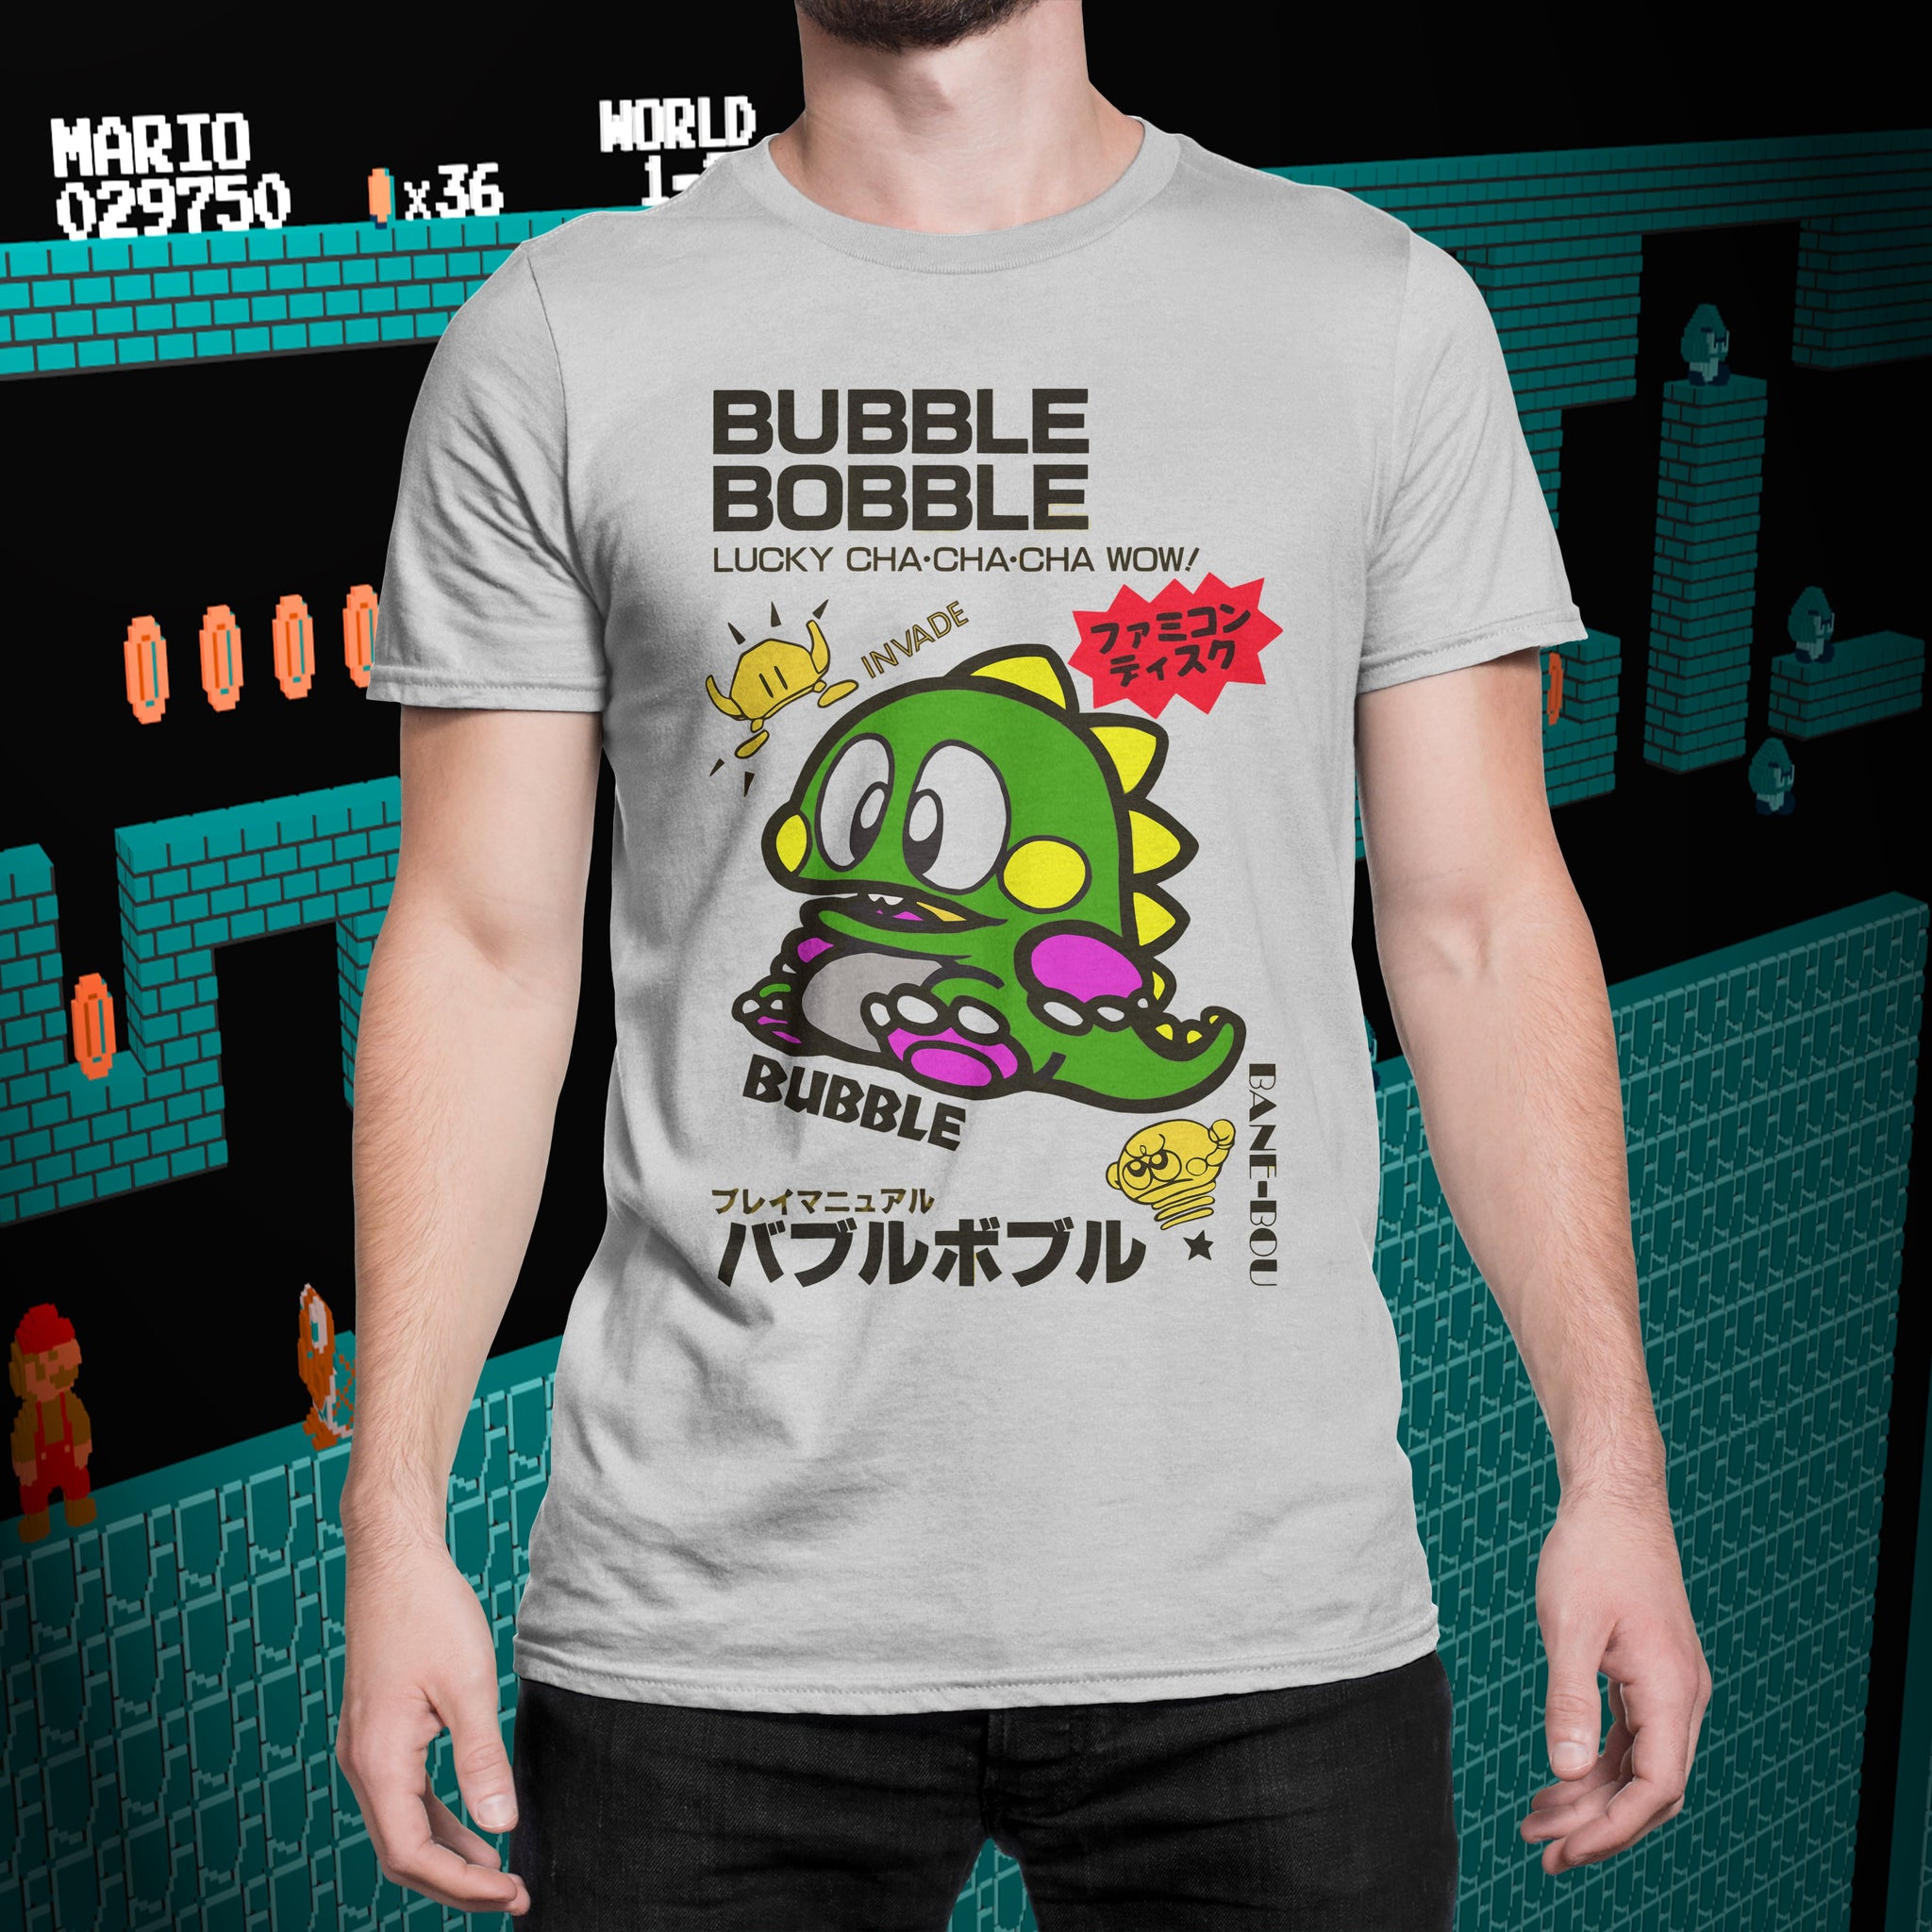 Bubble Bobble "Japanese" Tee